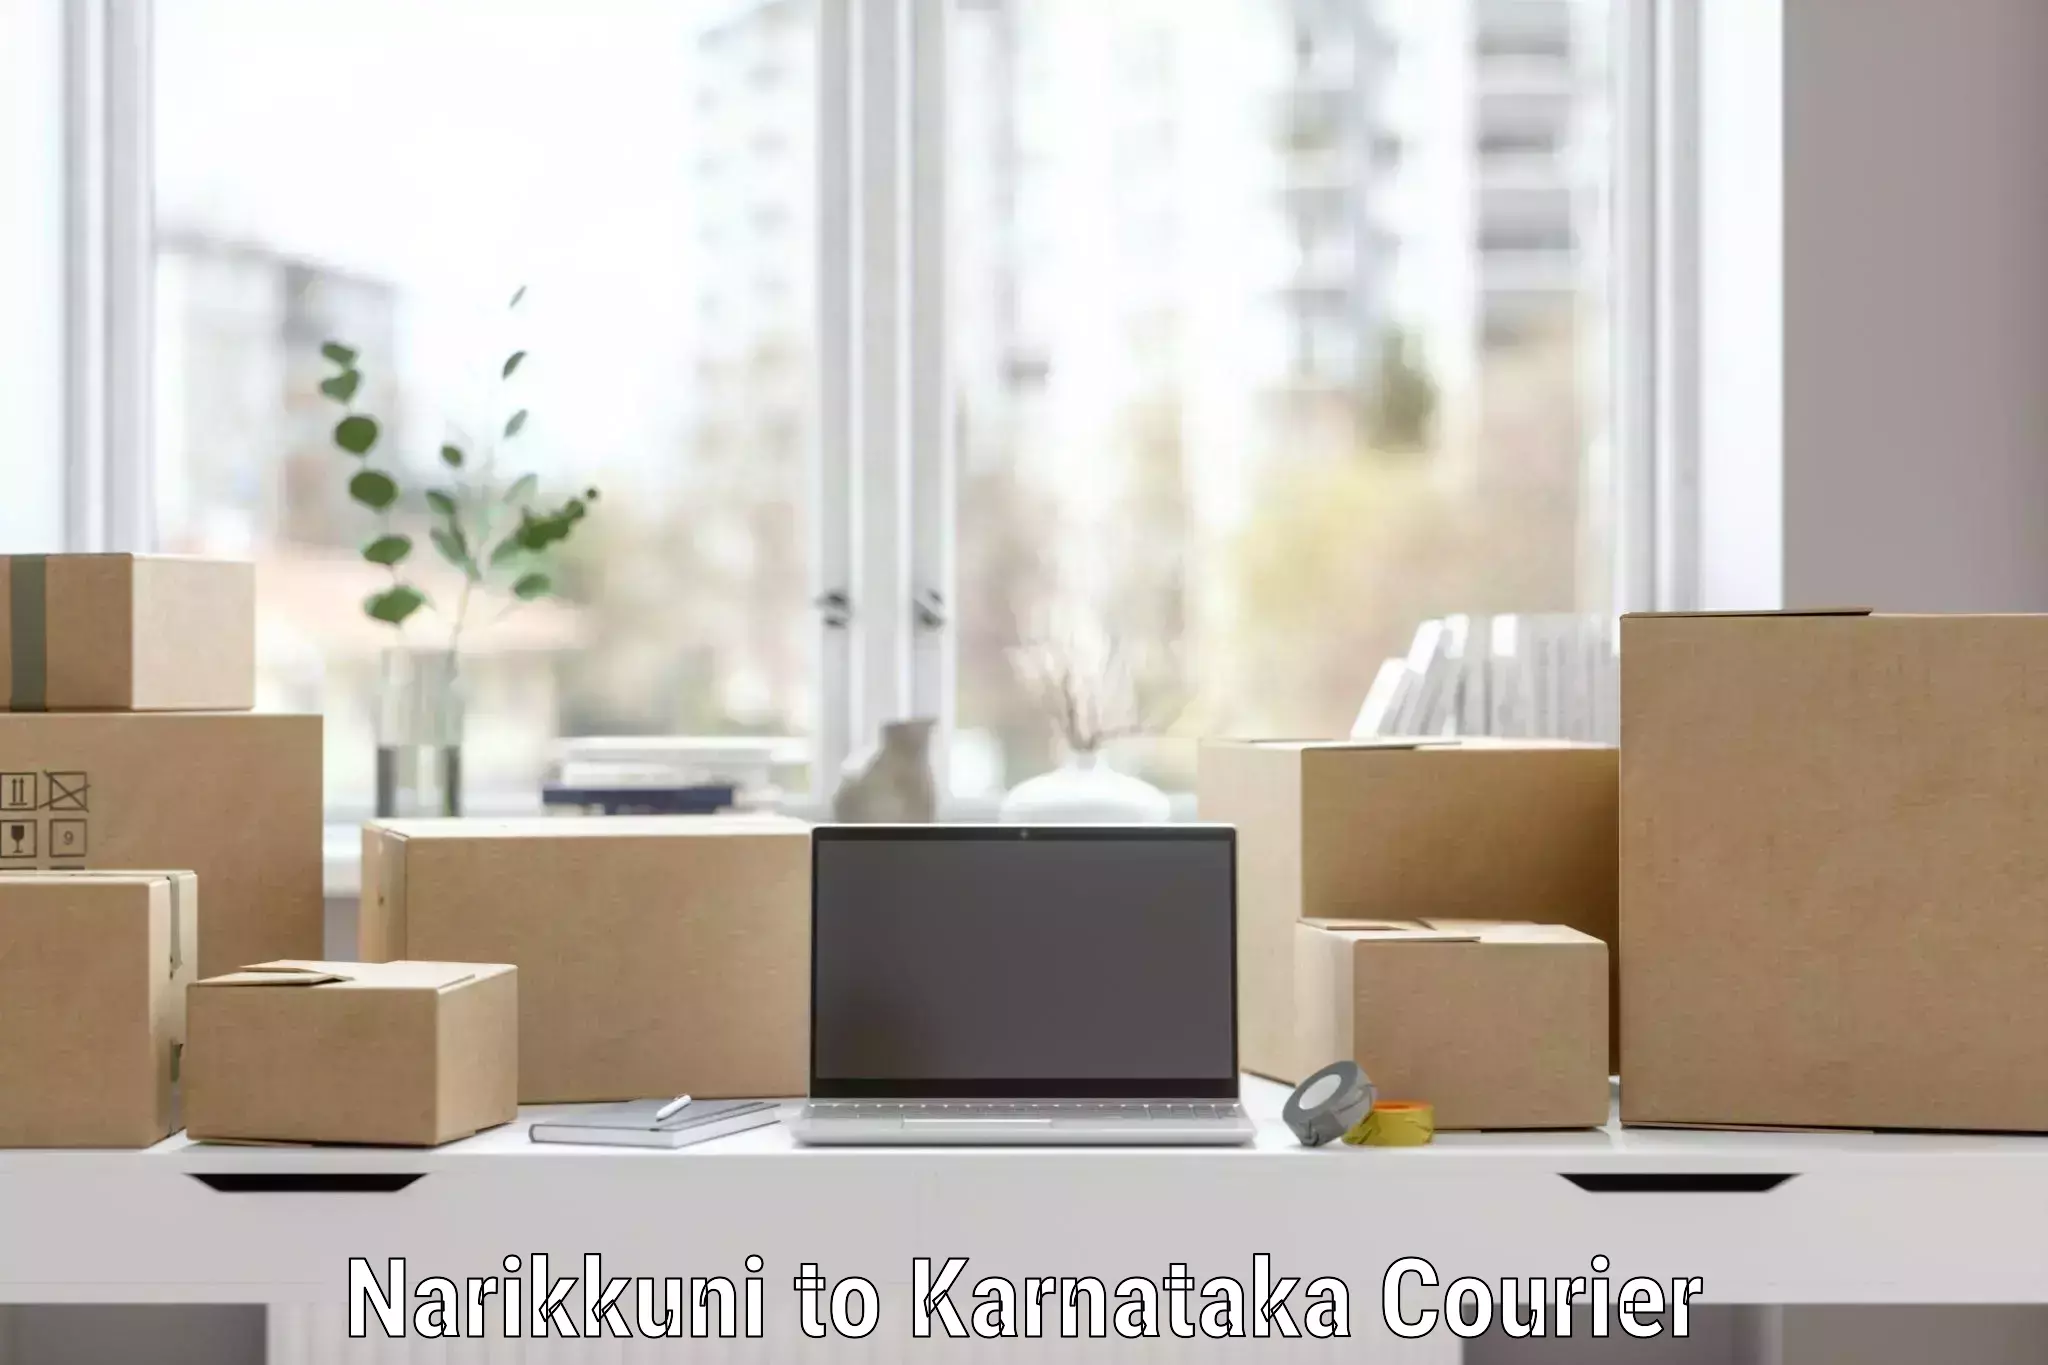 Reliable furniture transport in Narikkuni to Karnataka